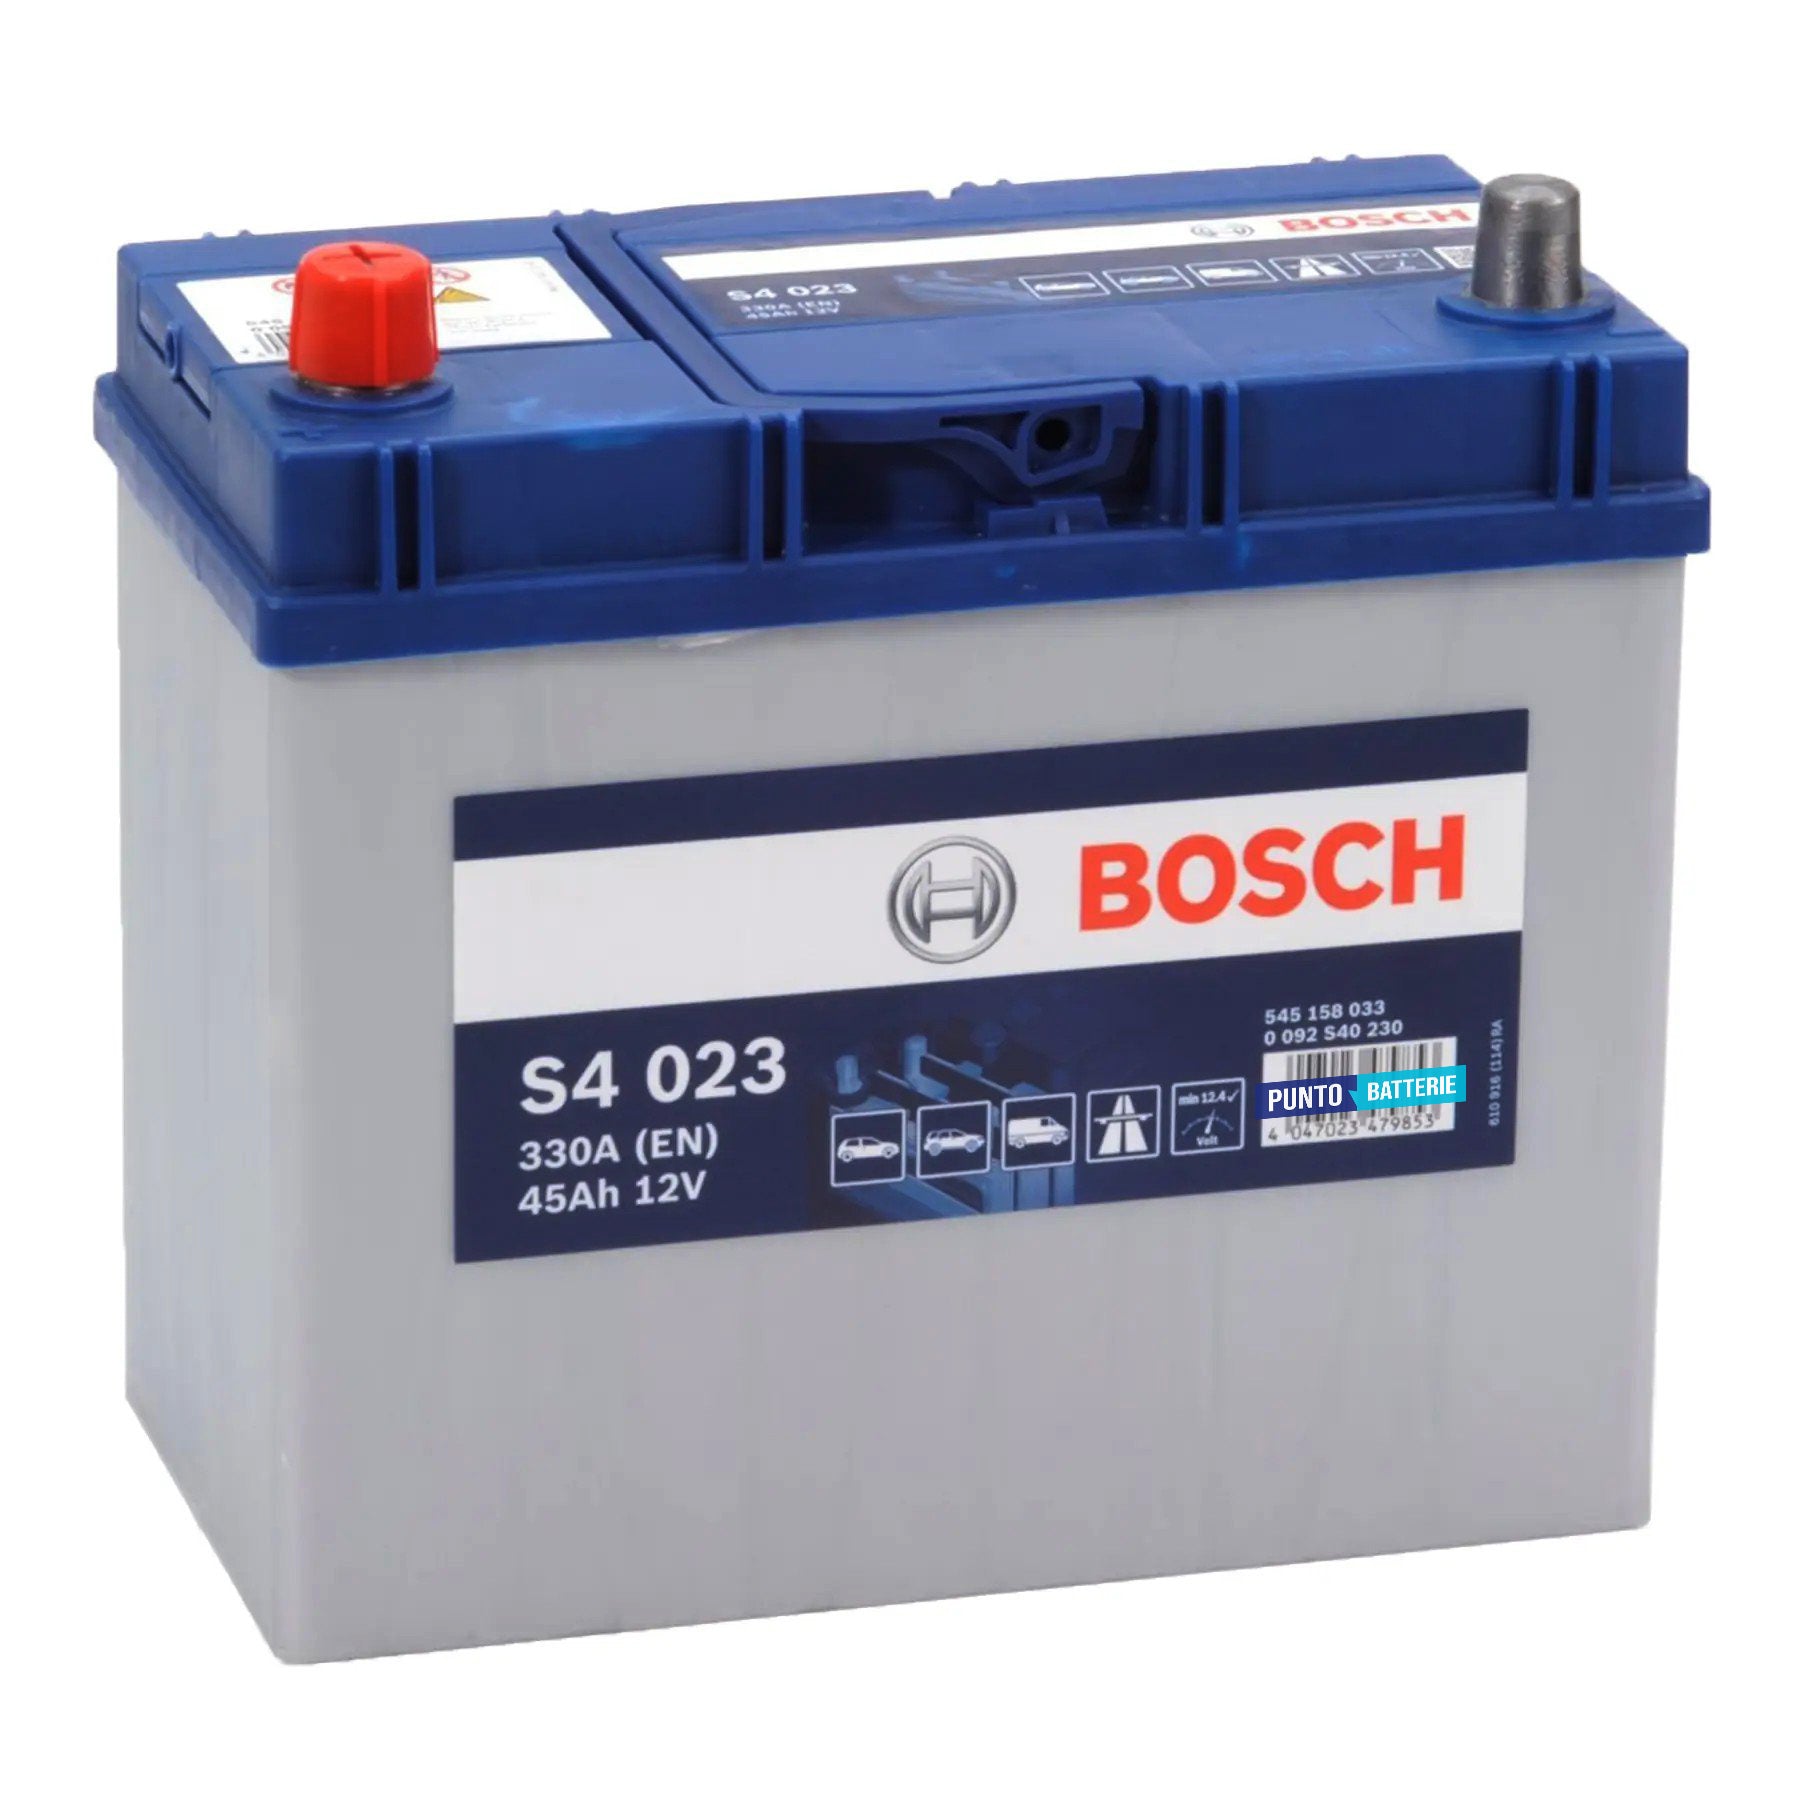 Batteria originale Bosch S4 S4 023, dimensioni 238 x 129 x 227, polo positivo a sinistra, 12 volt, 45 amperora, 330 ampere. Batteria per auto e veicoli leggeri.